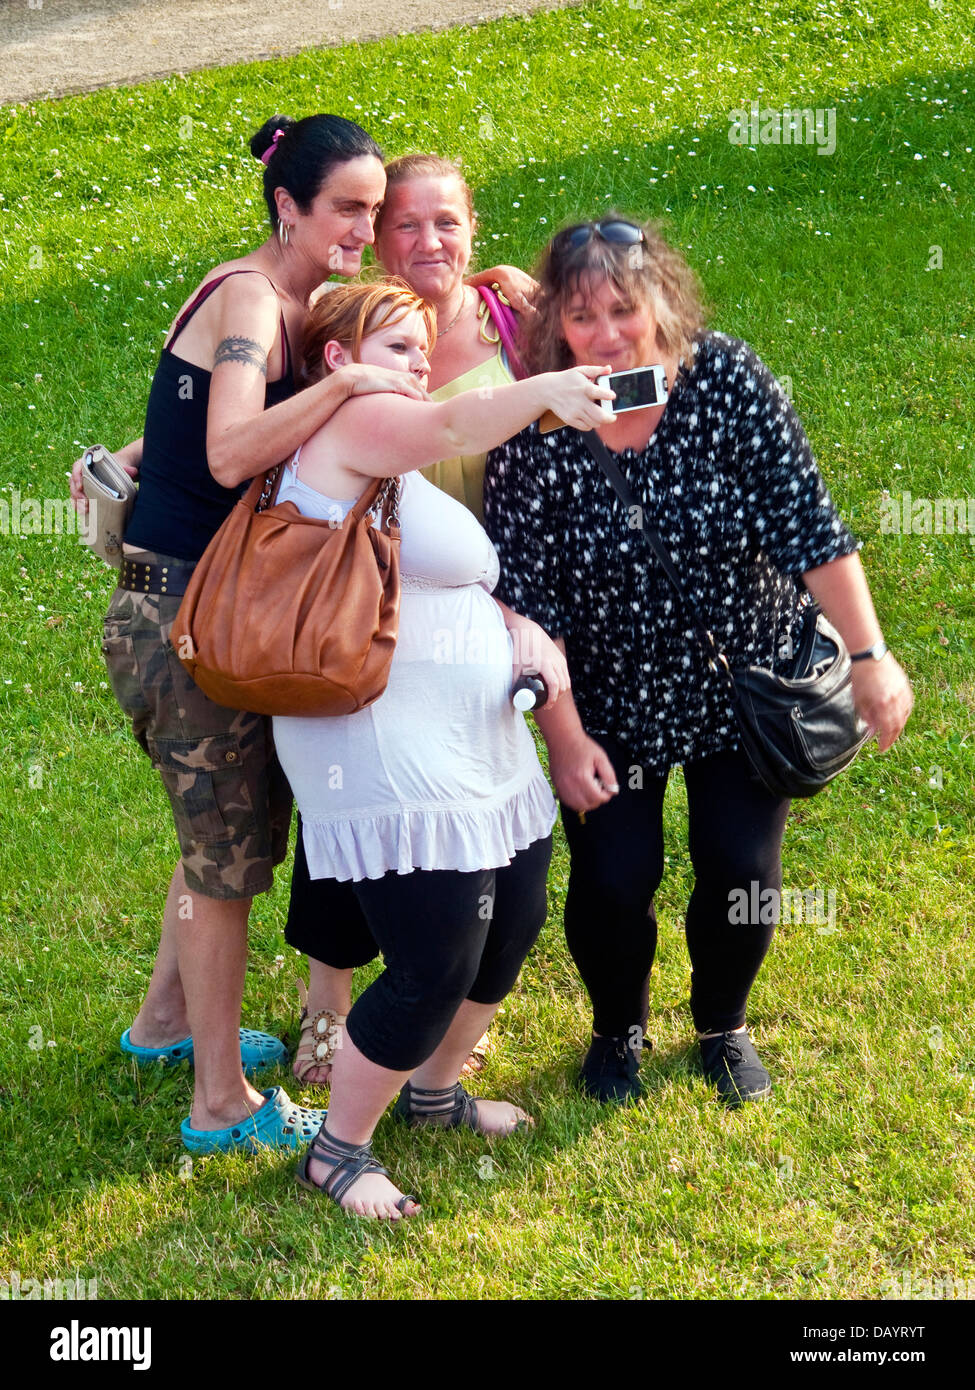 Quatre femmes de prendre photo de groupe / avec selfies smart phone) - France. Banque D'Images